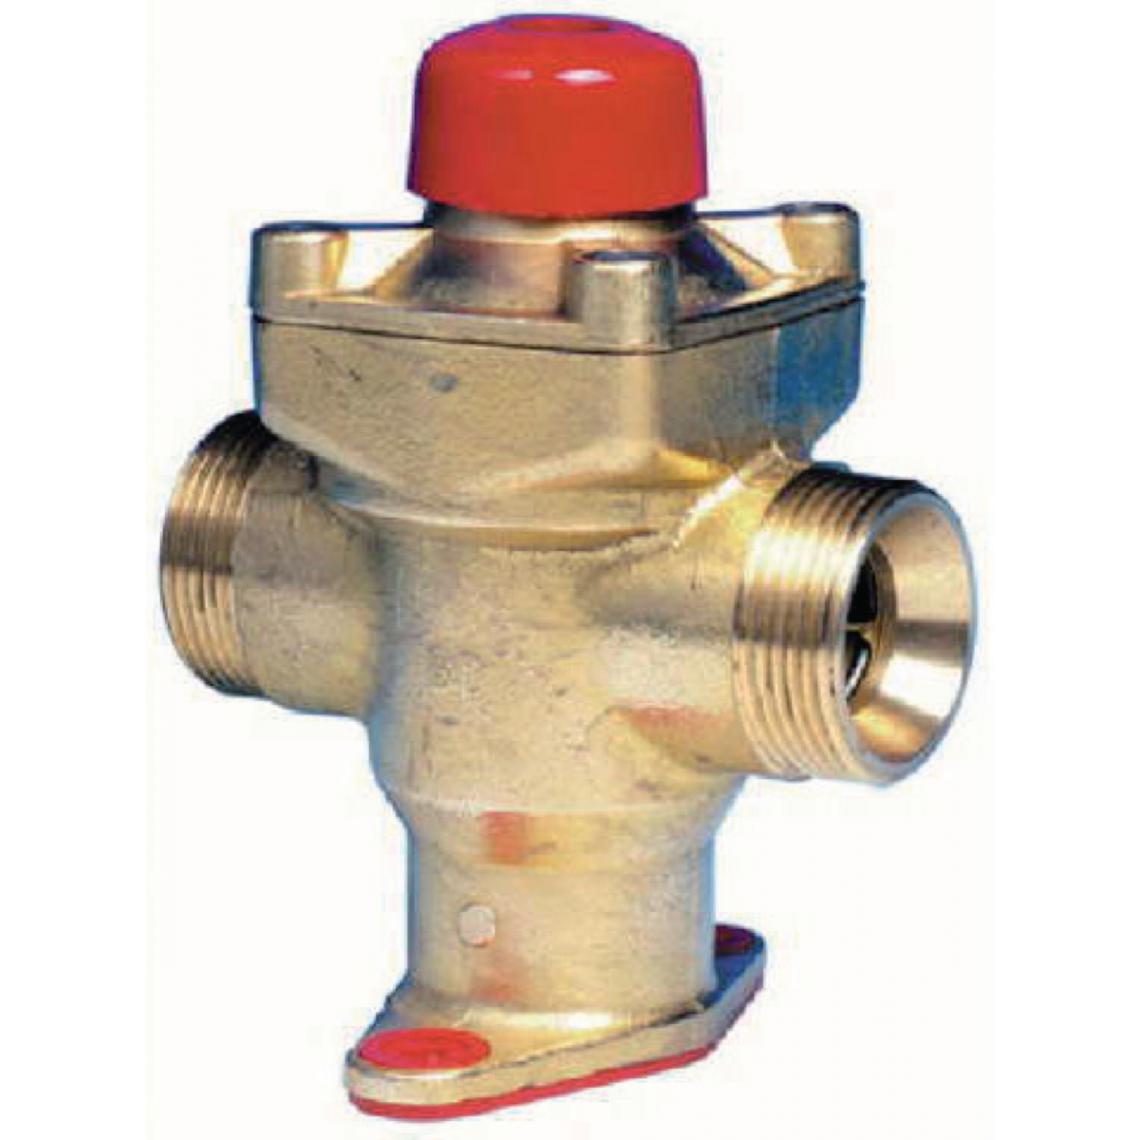 Banides & Debeaurain - robinet gaz - a poussoir à sécurité - coup de poing - diamètre 20 x 27 mm - banides 2905015 - Flexible gaz